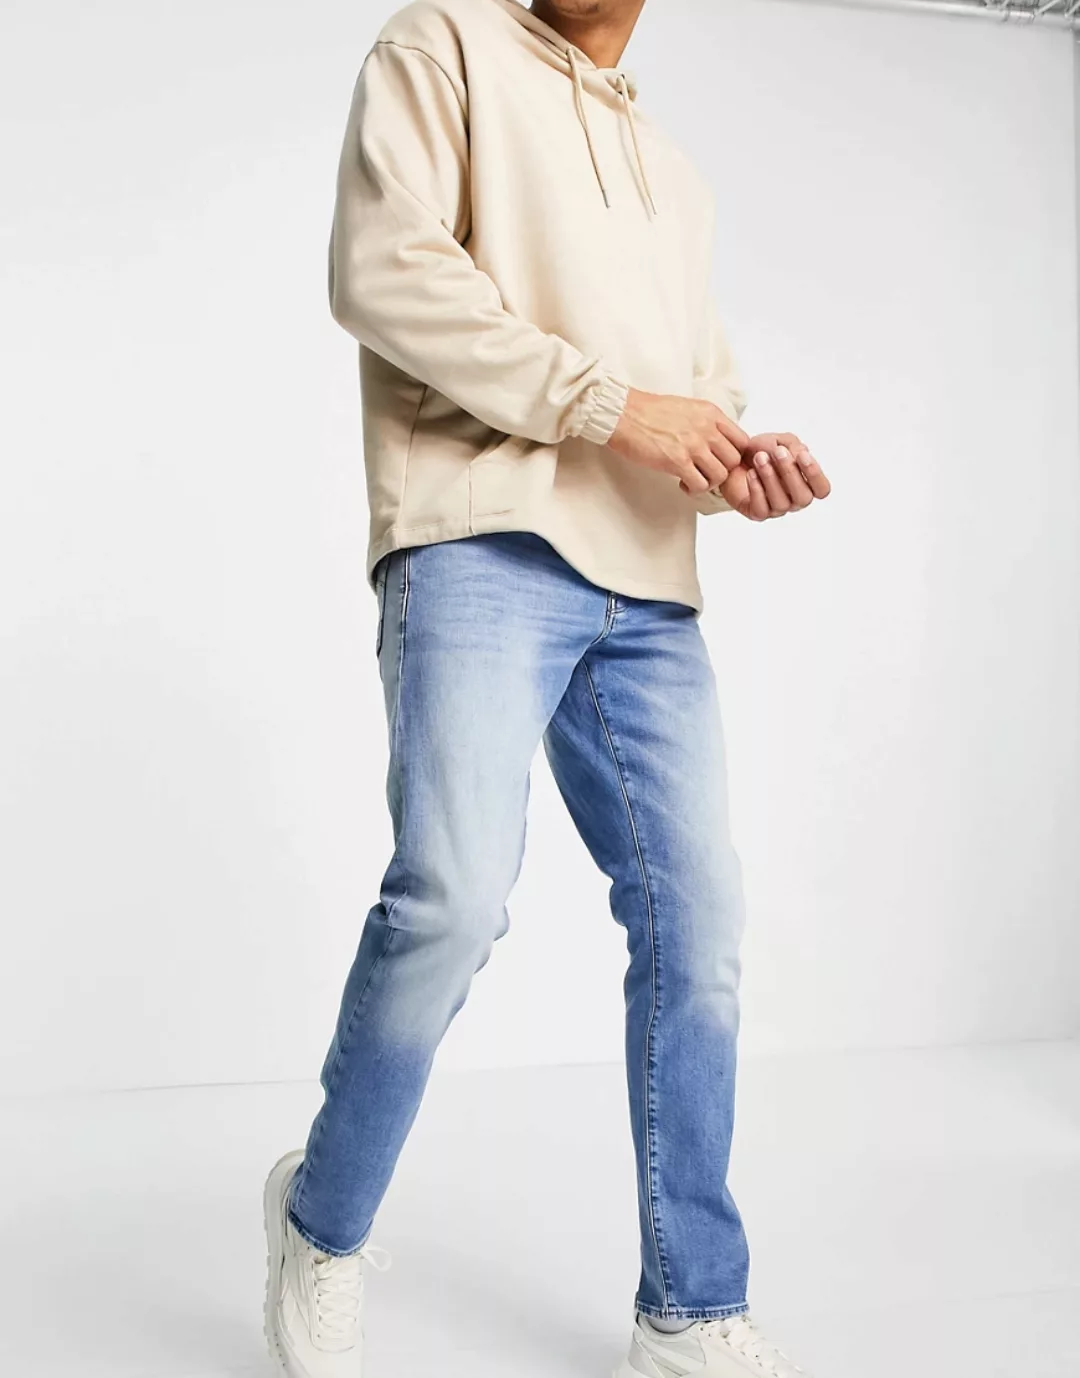 G-Star Herren Jeans 3301 REGULAR TAPERED - Tapered Fit - Blau - Light Indig günstig online kaufen